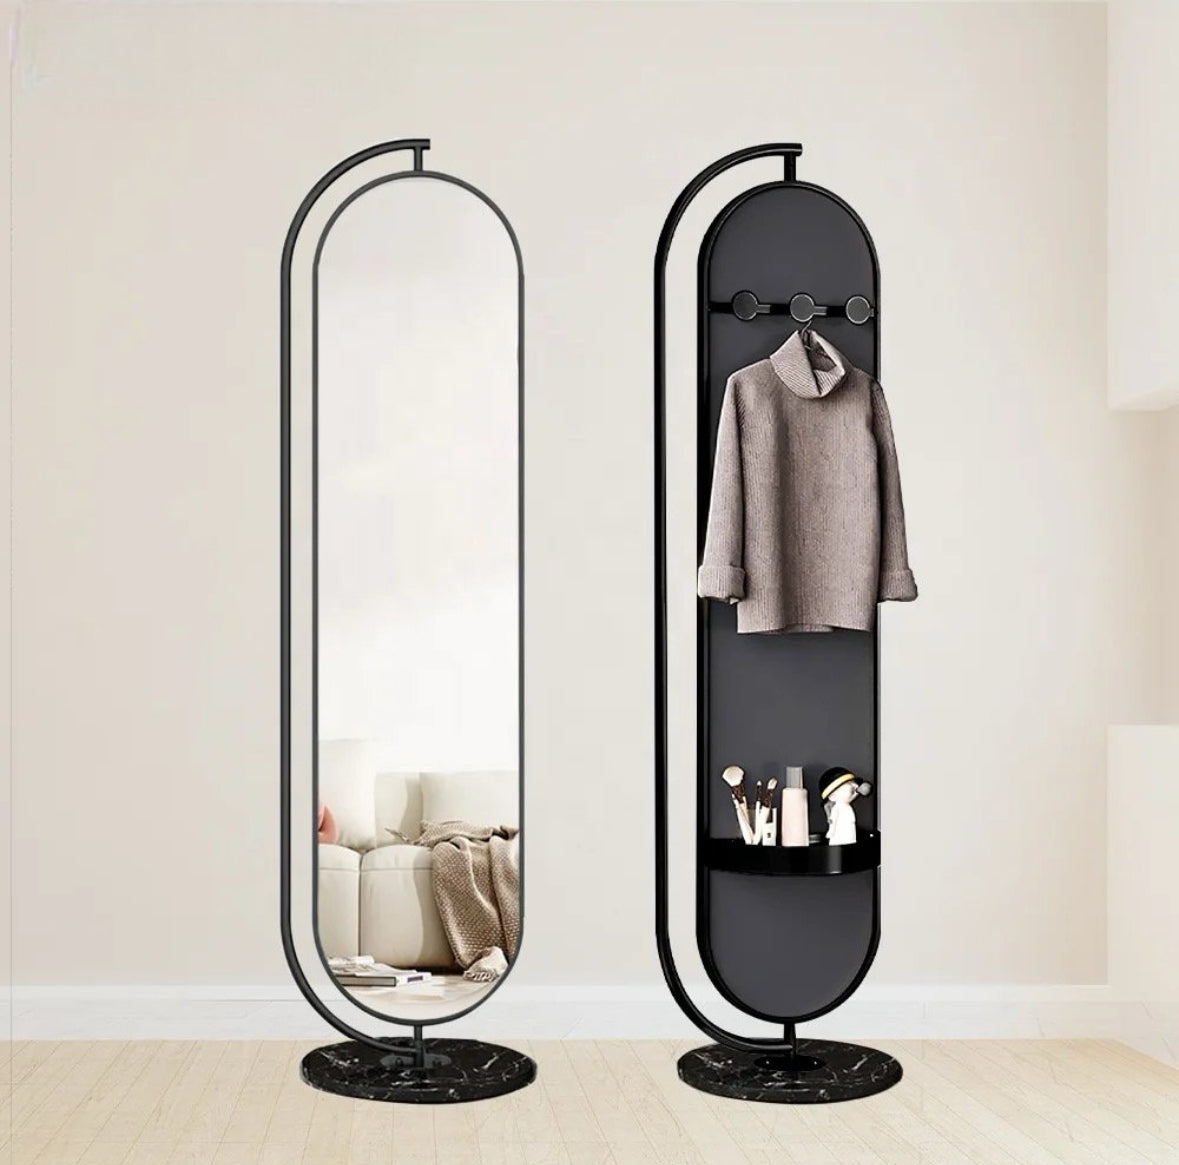 مرآة بيضاوية للجوع ومرآة قابلة للدوران